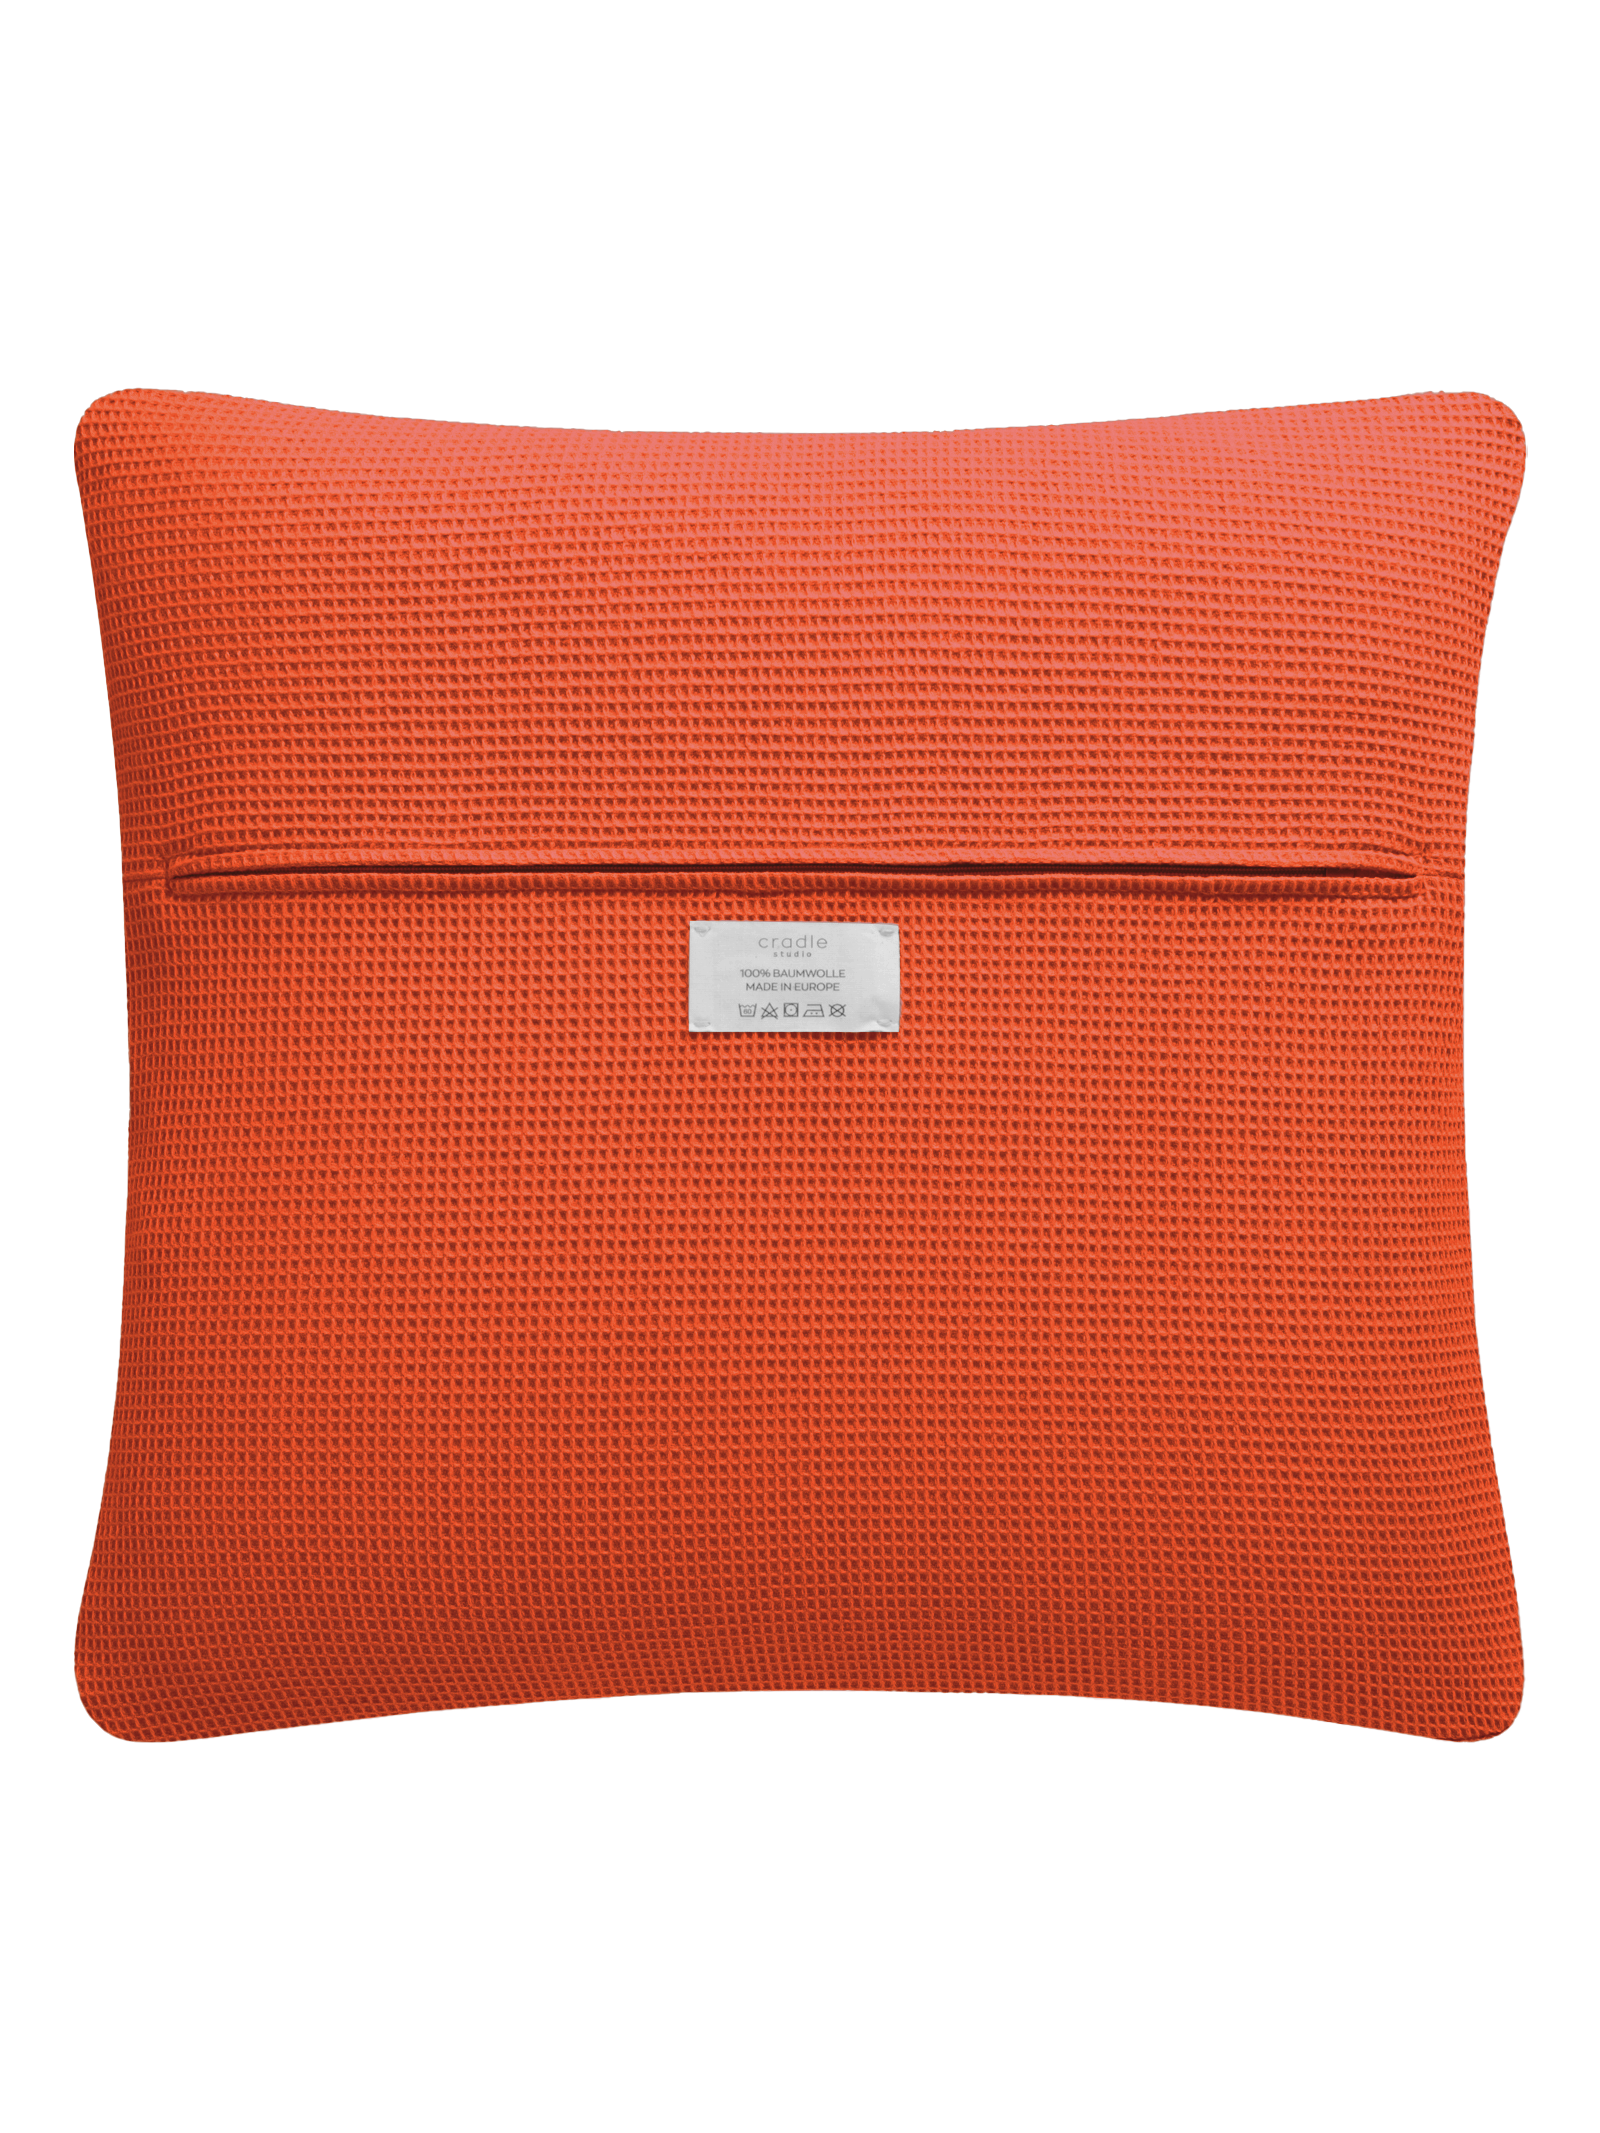 Piqué Cushion & Blanket Set / Pumpkin